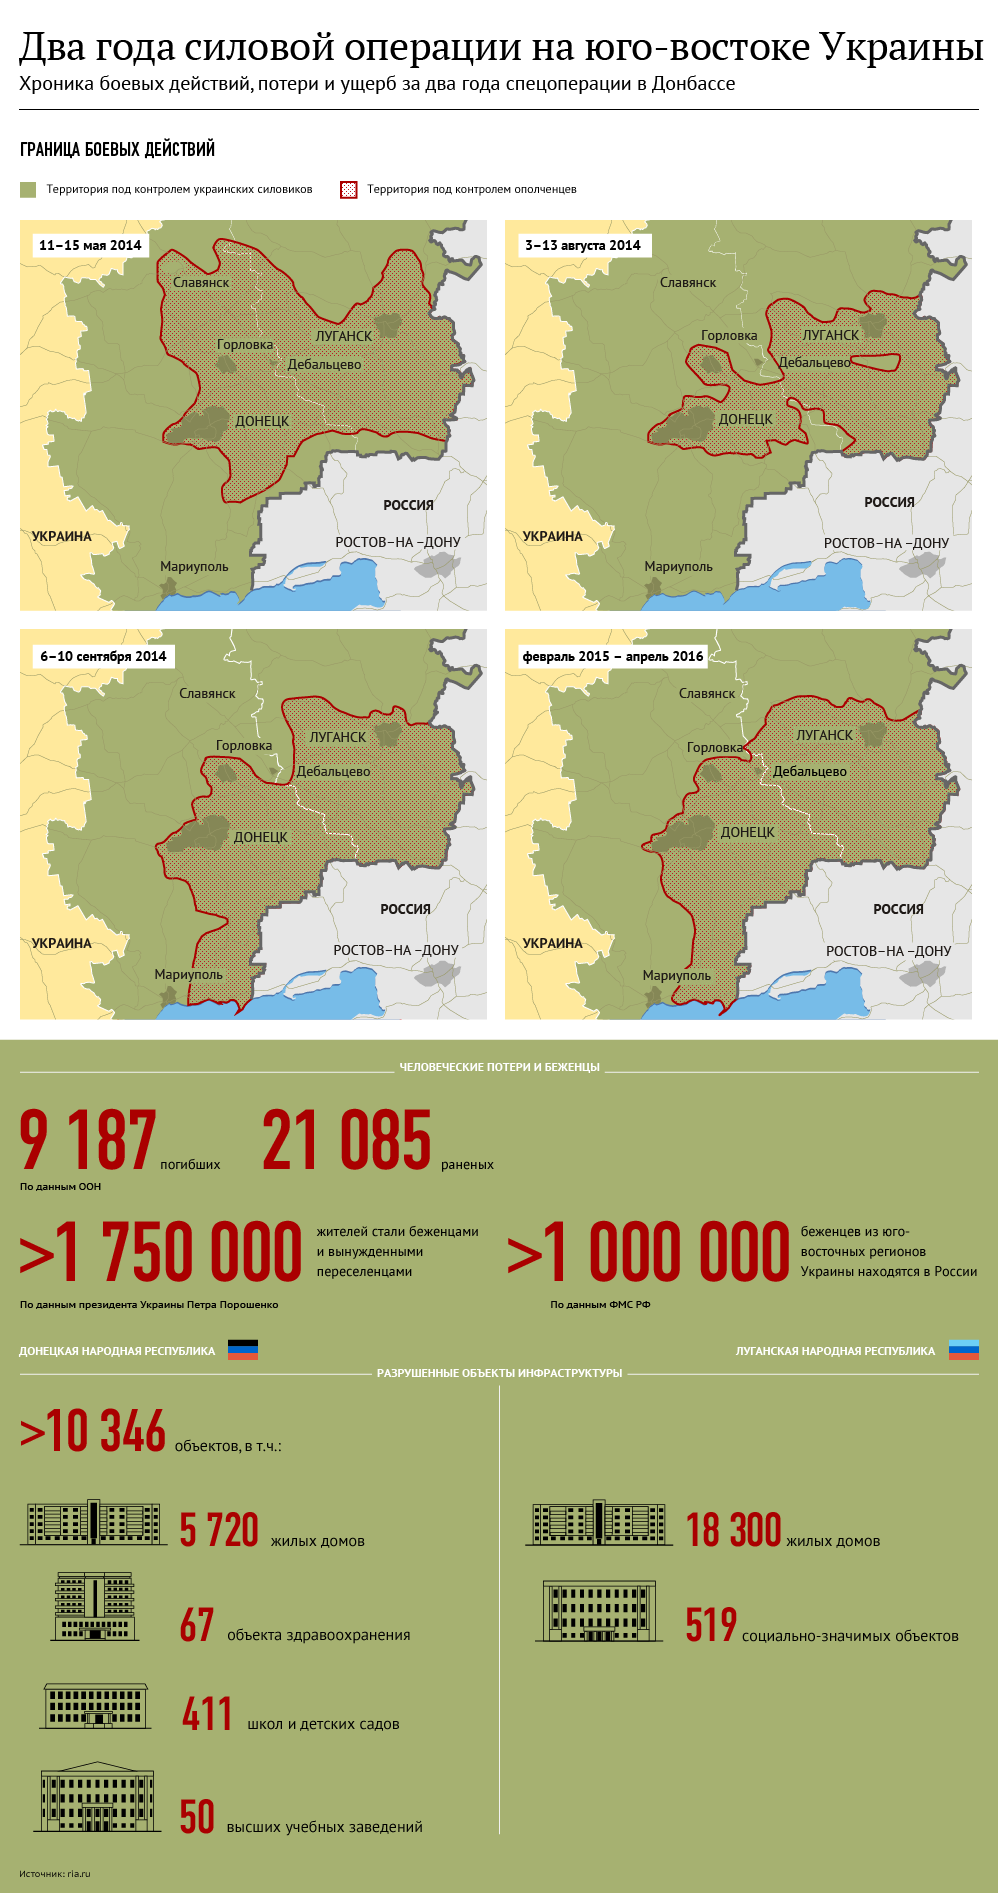 Два года силовой операции на юго-востоке Украины